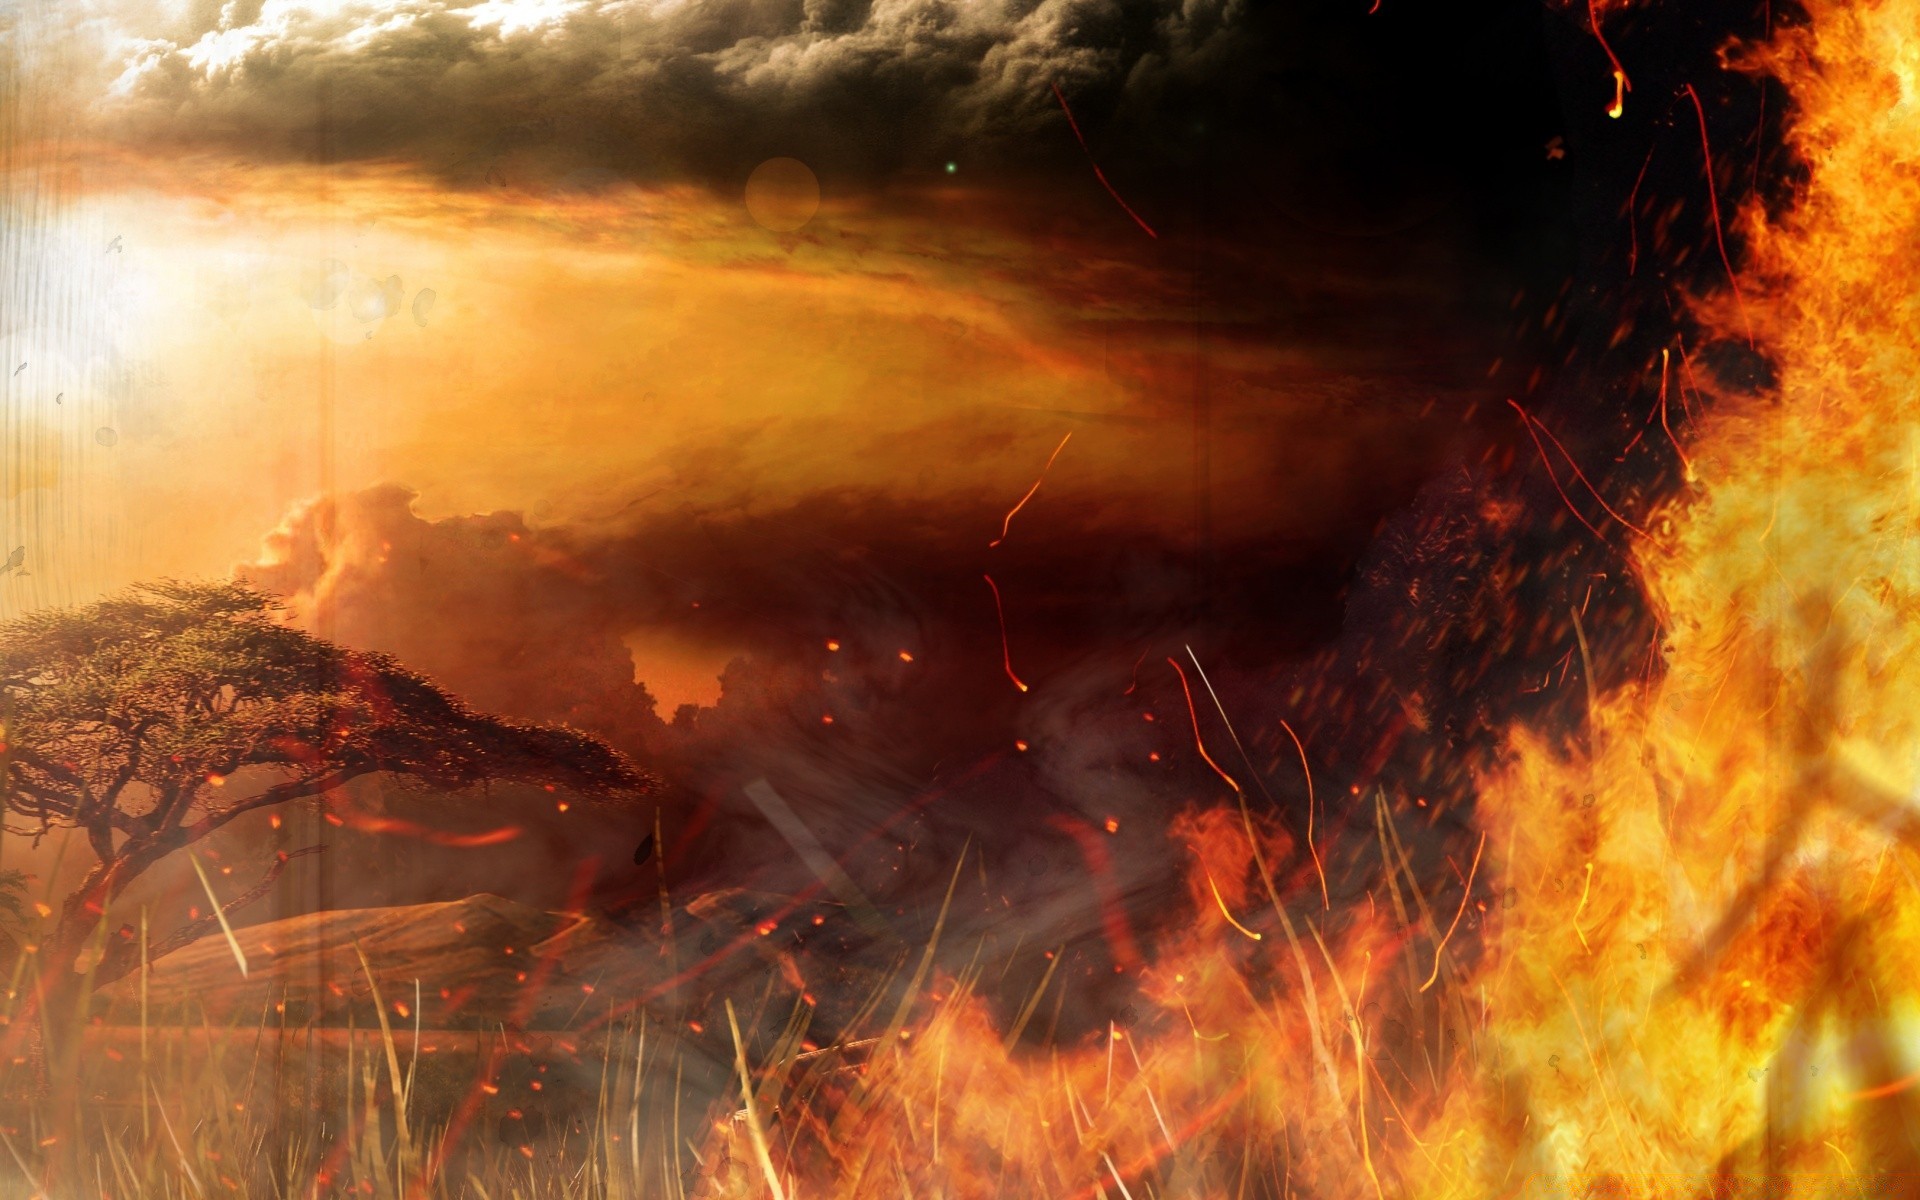 far cry пламя дым бедствие энергии опасность тепло горячая пожар закат ясень извержение вулкан уголь пейзаж природный газ взрыв сожгли топлива